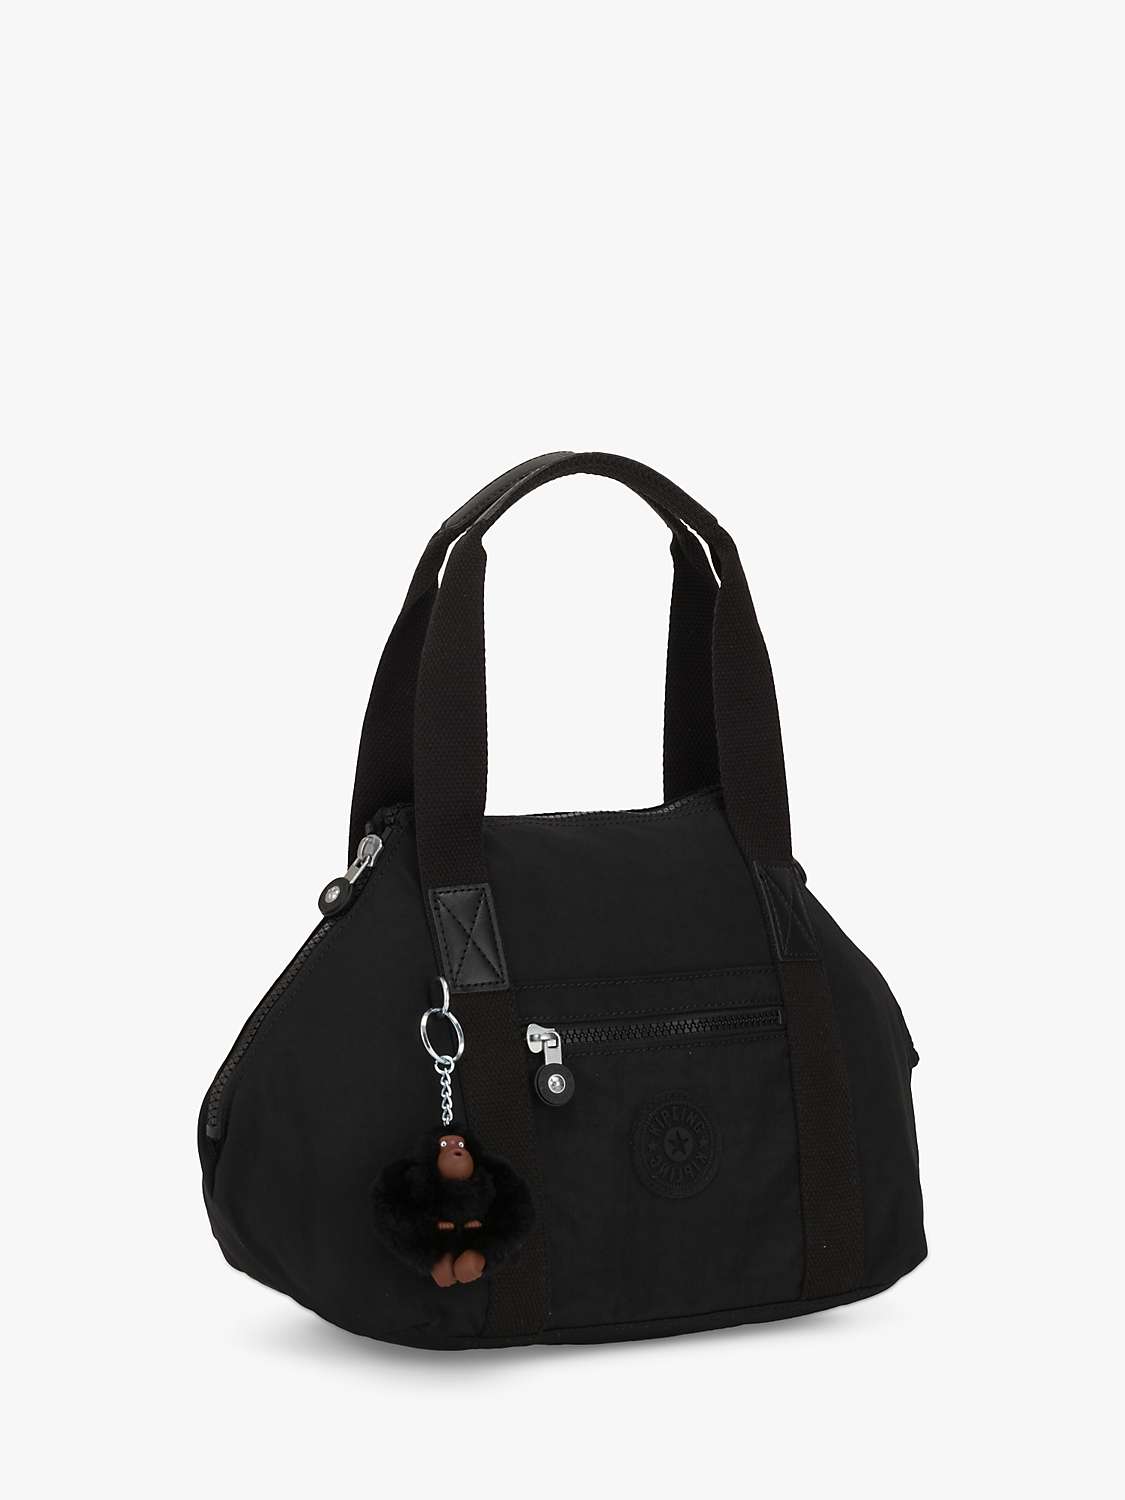 Buy Kipling Art Mini Tote Bag Online at johnlewis.com